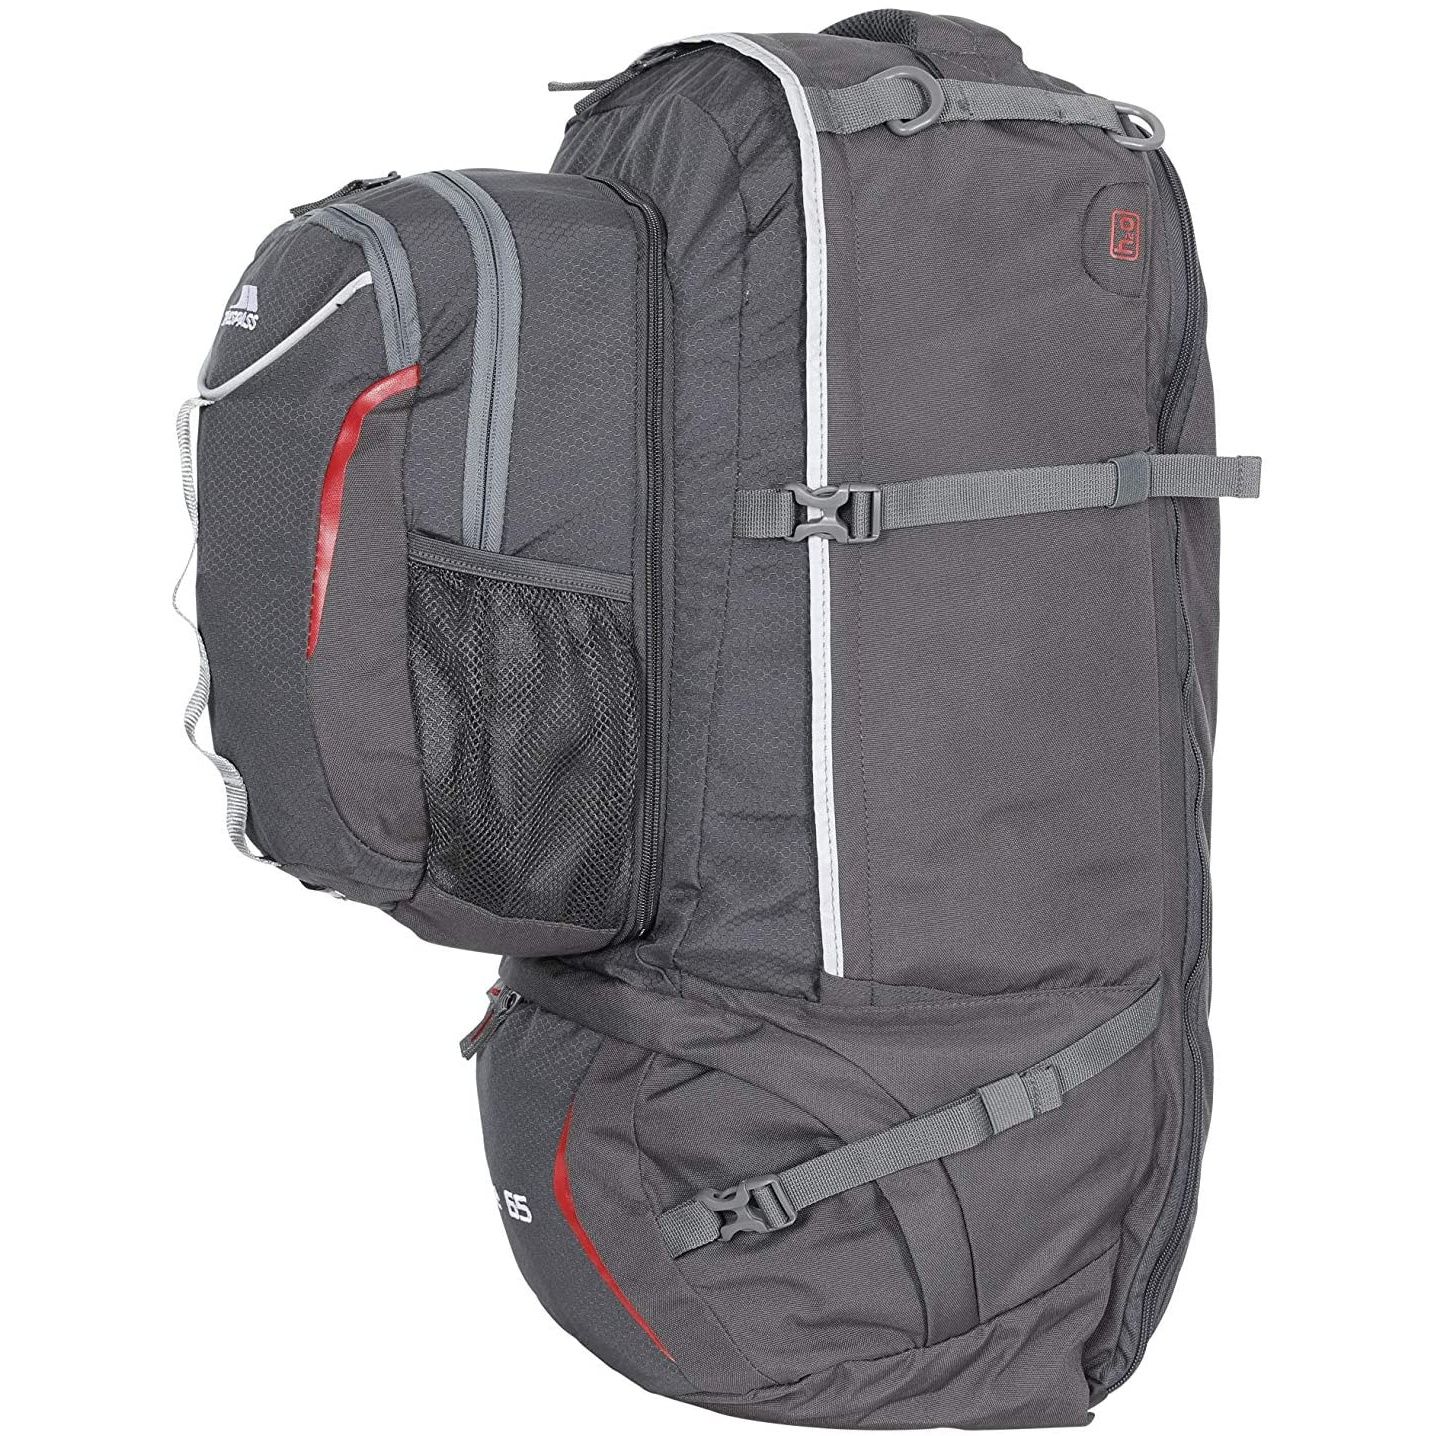 100% 600D Polyester ripstop. 65 litre rucksack. Detachable 10 litre backpack. Supportive back system. Load adjusting shoulder straps. Sturdy top carry handle.